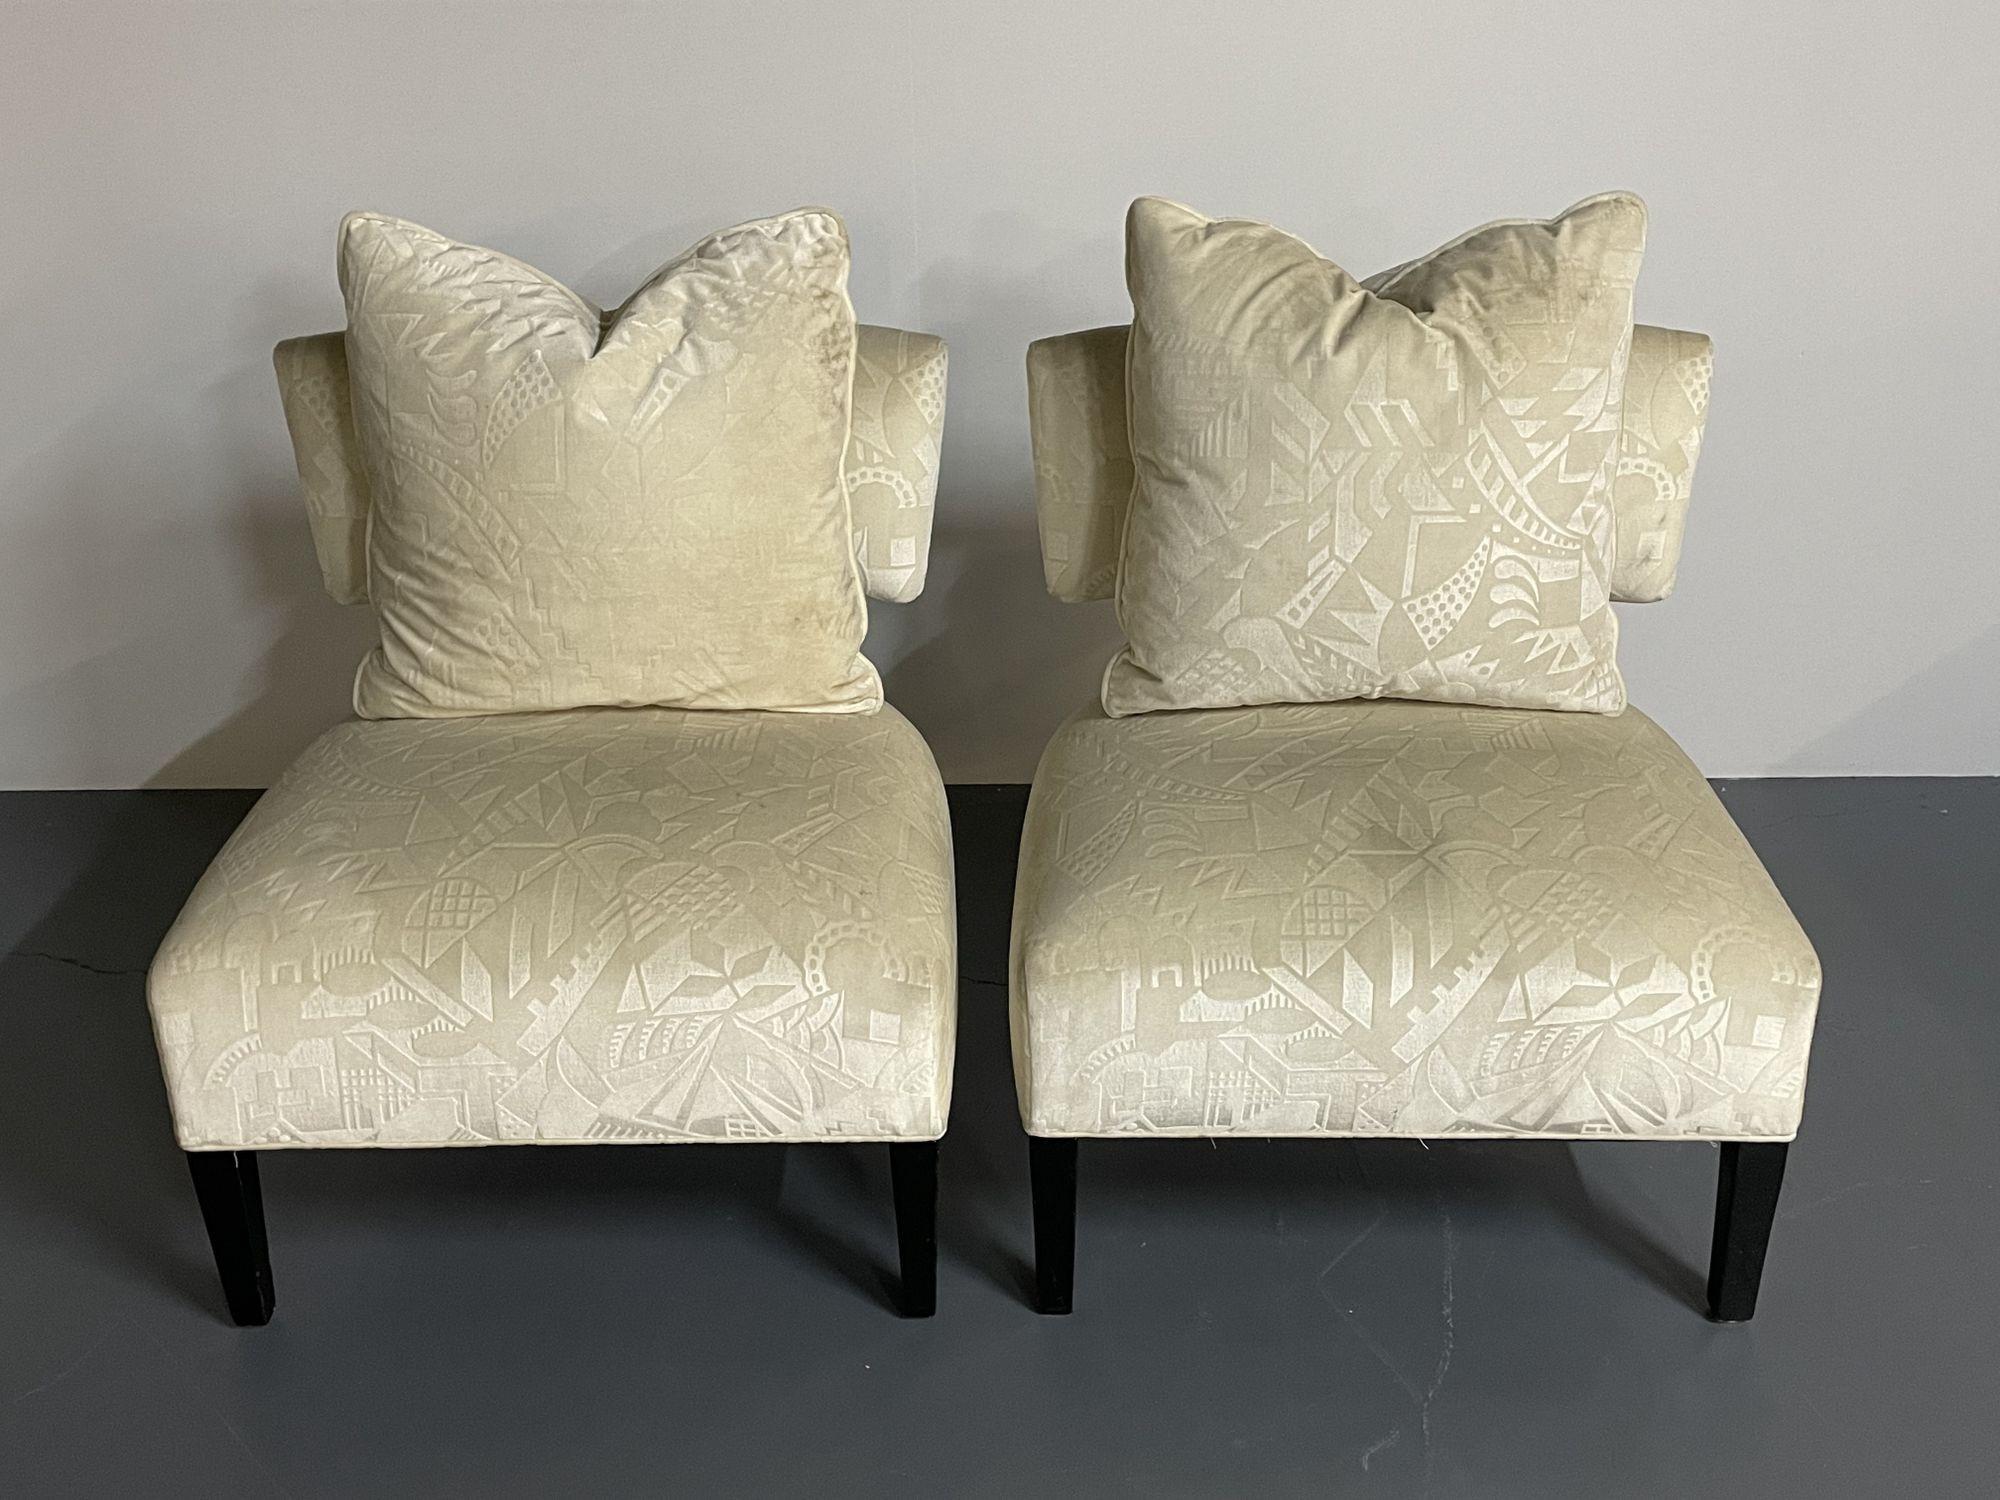 Paar Mid-Century Modern organische Form Harvey Probber  style Lounge / Slipper Stuhl
 
Ein Paar amerikanischer Designer-Lounge- oder Pantoffelstühle im Modernismus. Jedes auf Ebenholzbeinen mit einem hochgezogenen, atemberaubenden weißen,